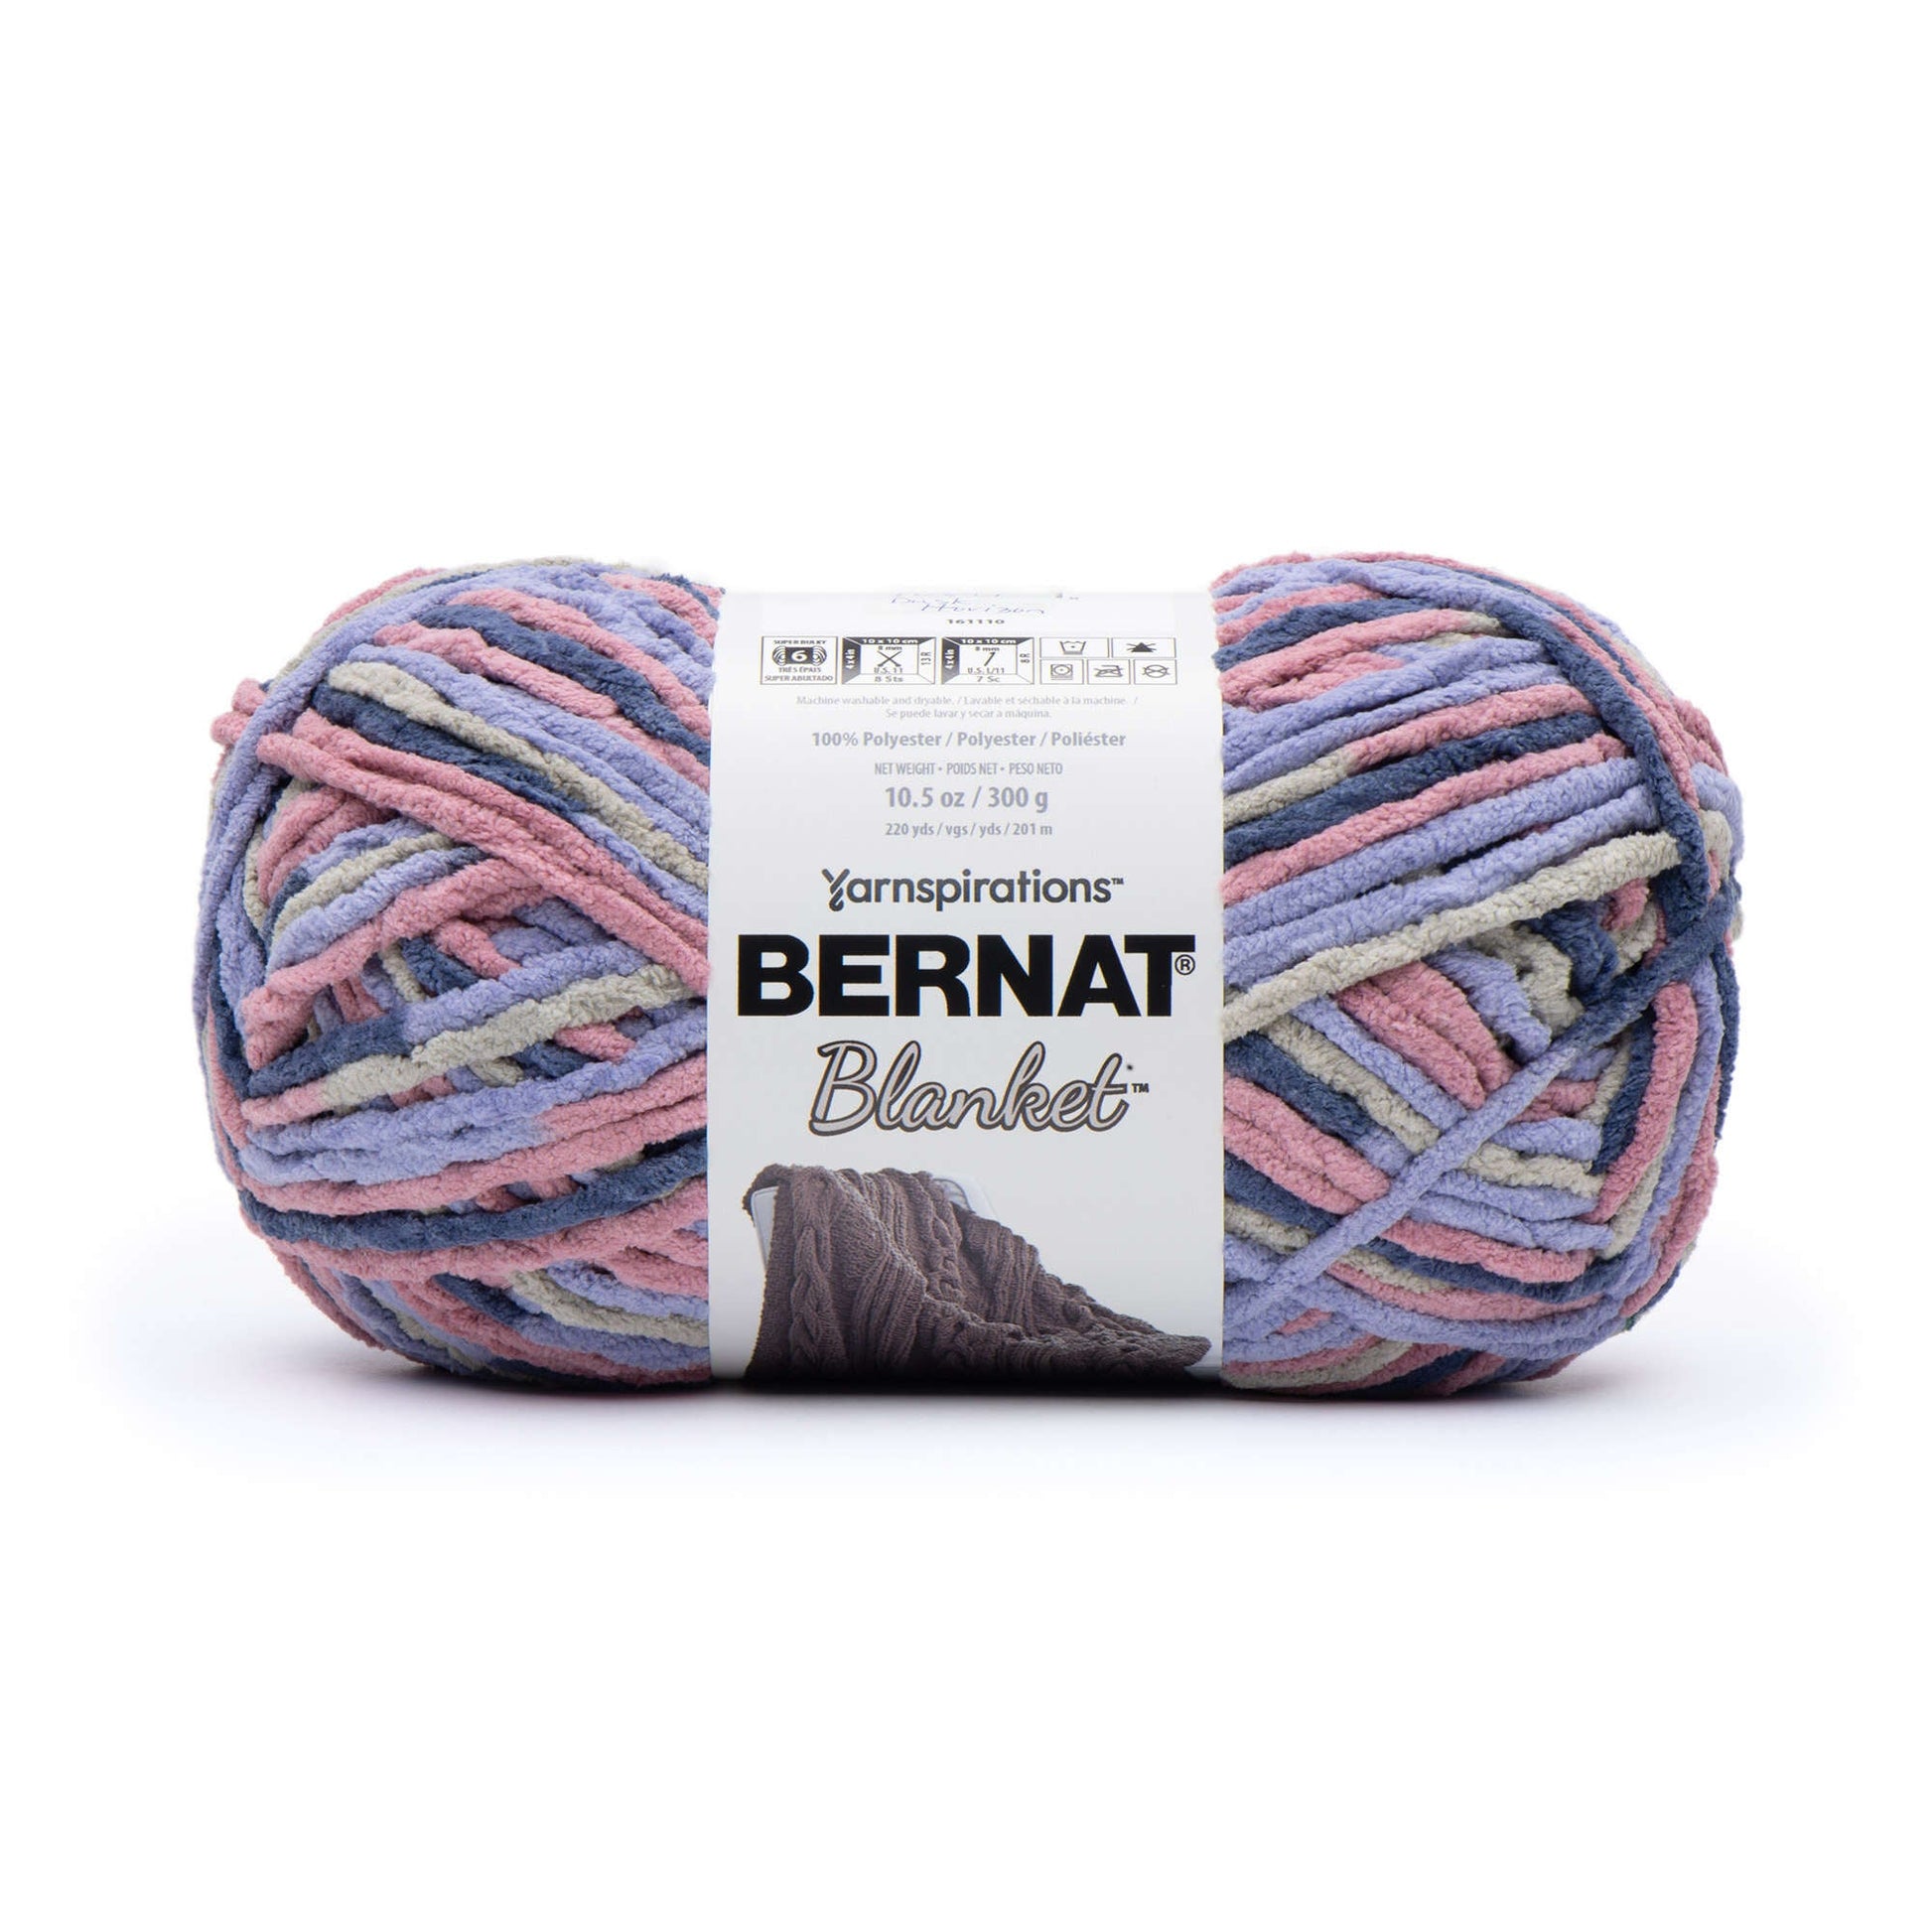 Bernat Blanket Yarn (300g/10.5oz) - Discontinued Shades